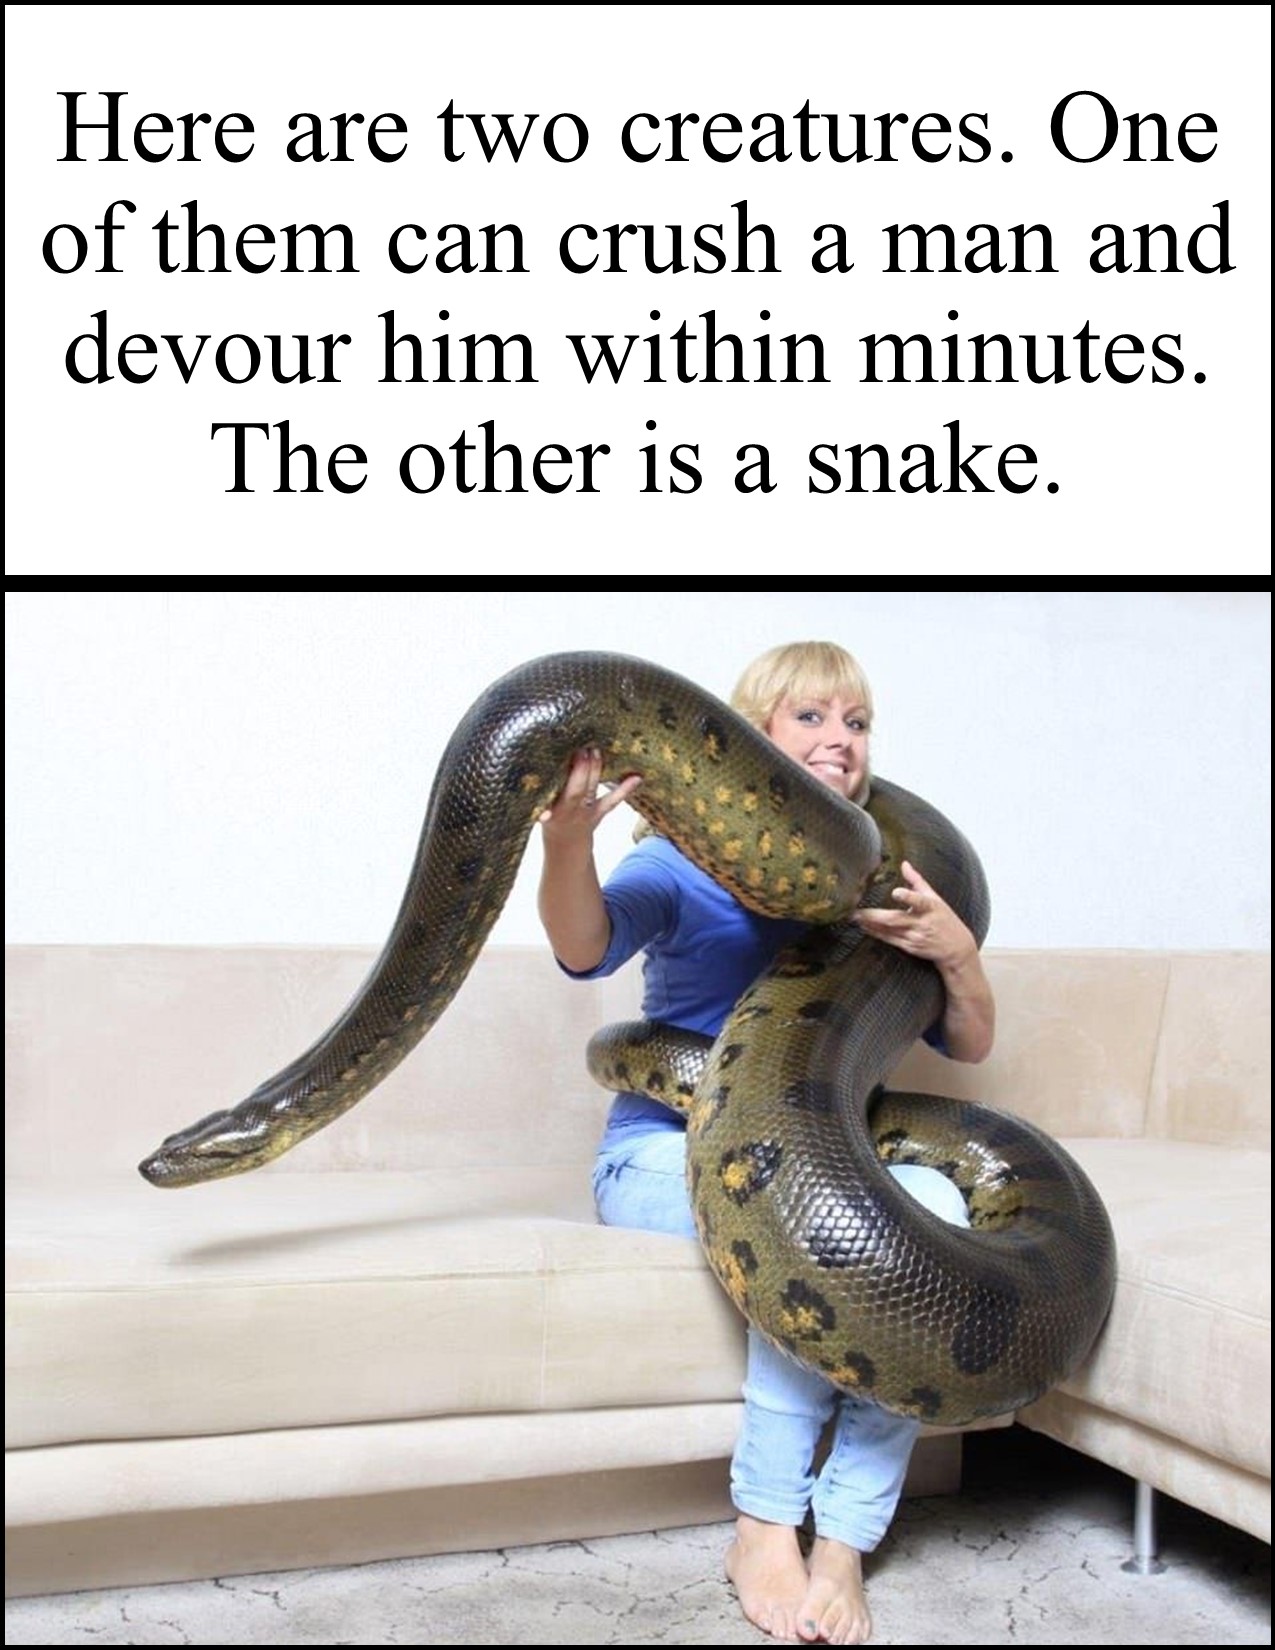 Woman and Snake.jpg